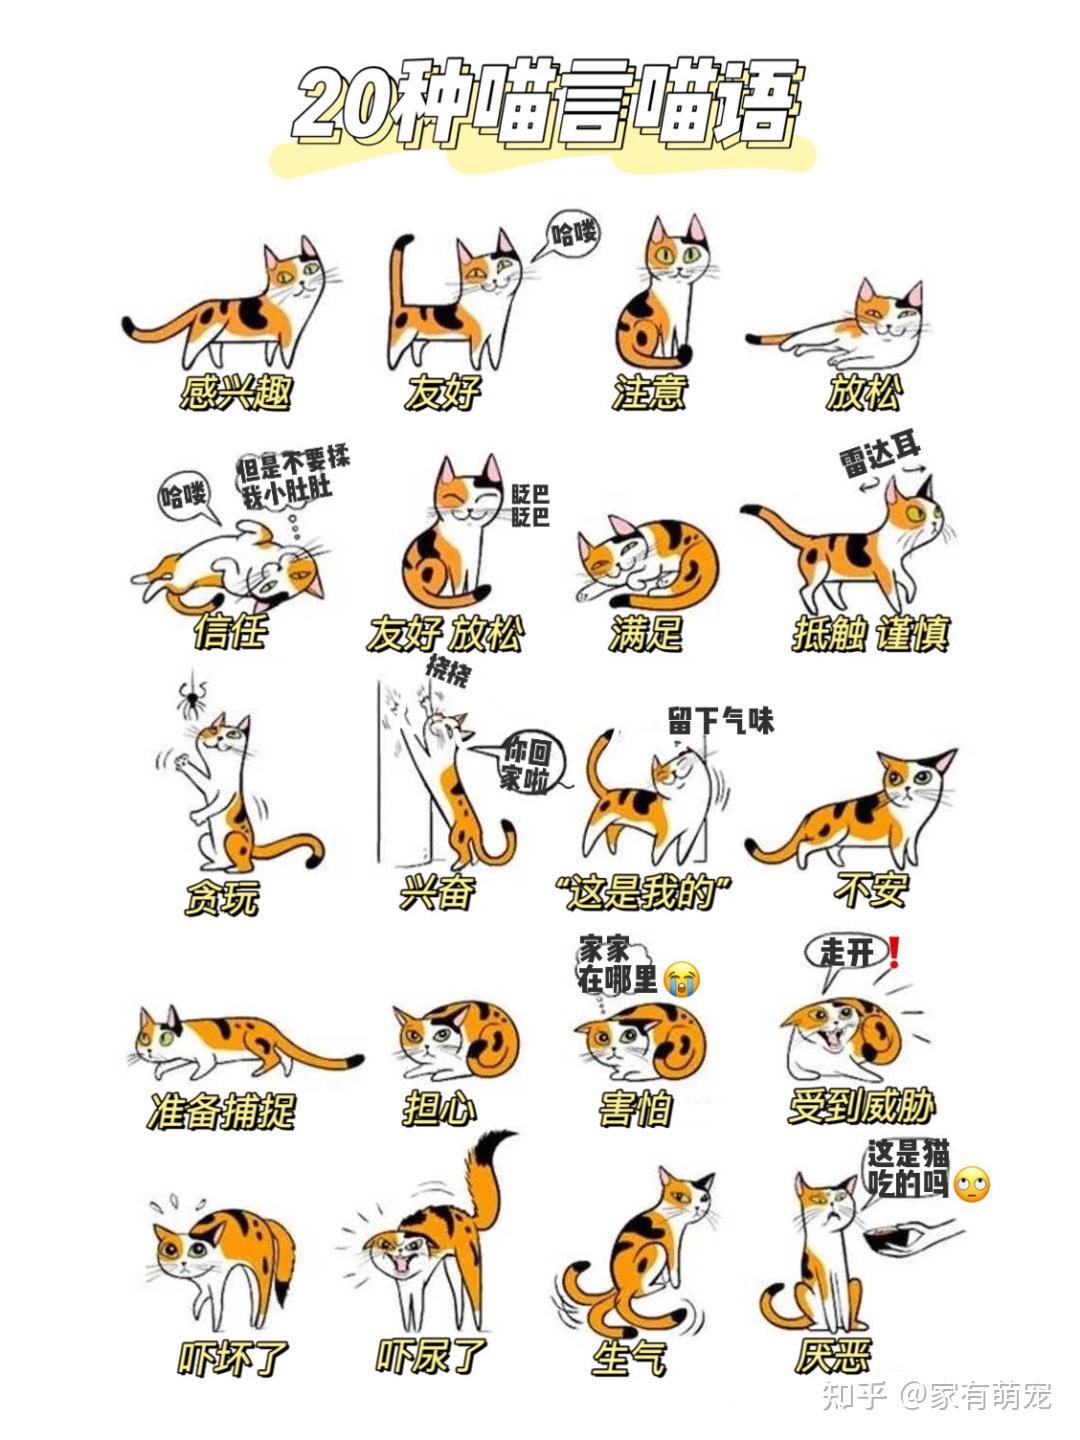 猫动作的含义图解图片